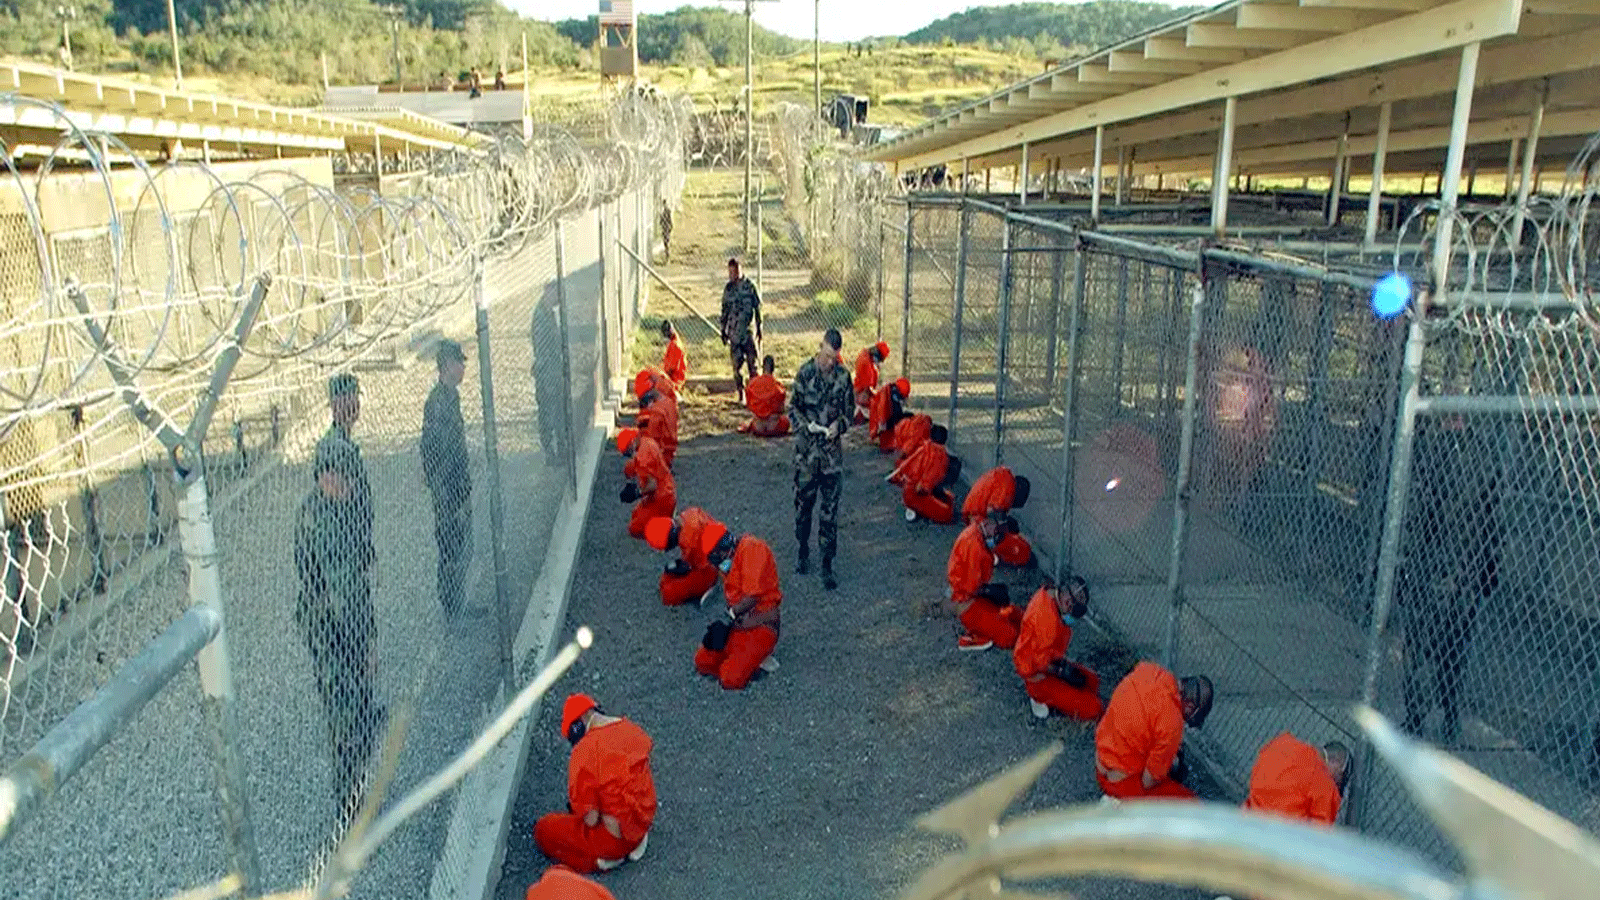 سجناء في معسكر الاعتقال في غوانتانامو الذي افتُتِحَ في يناير\ كانون الثاني 2002 واتُهِمَ بارتكاب العديد من انتهاكات حقوق الإنسان منذ ذلك الحين